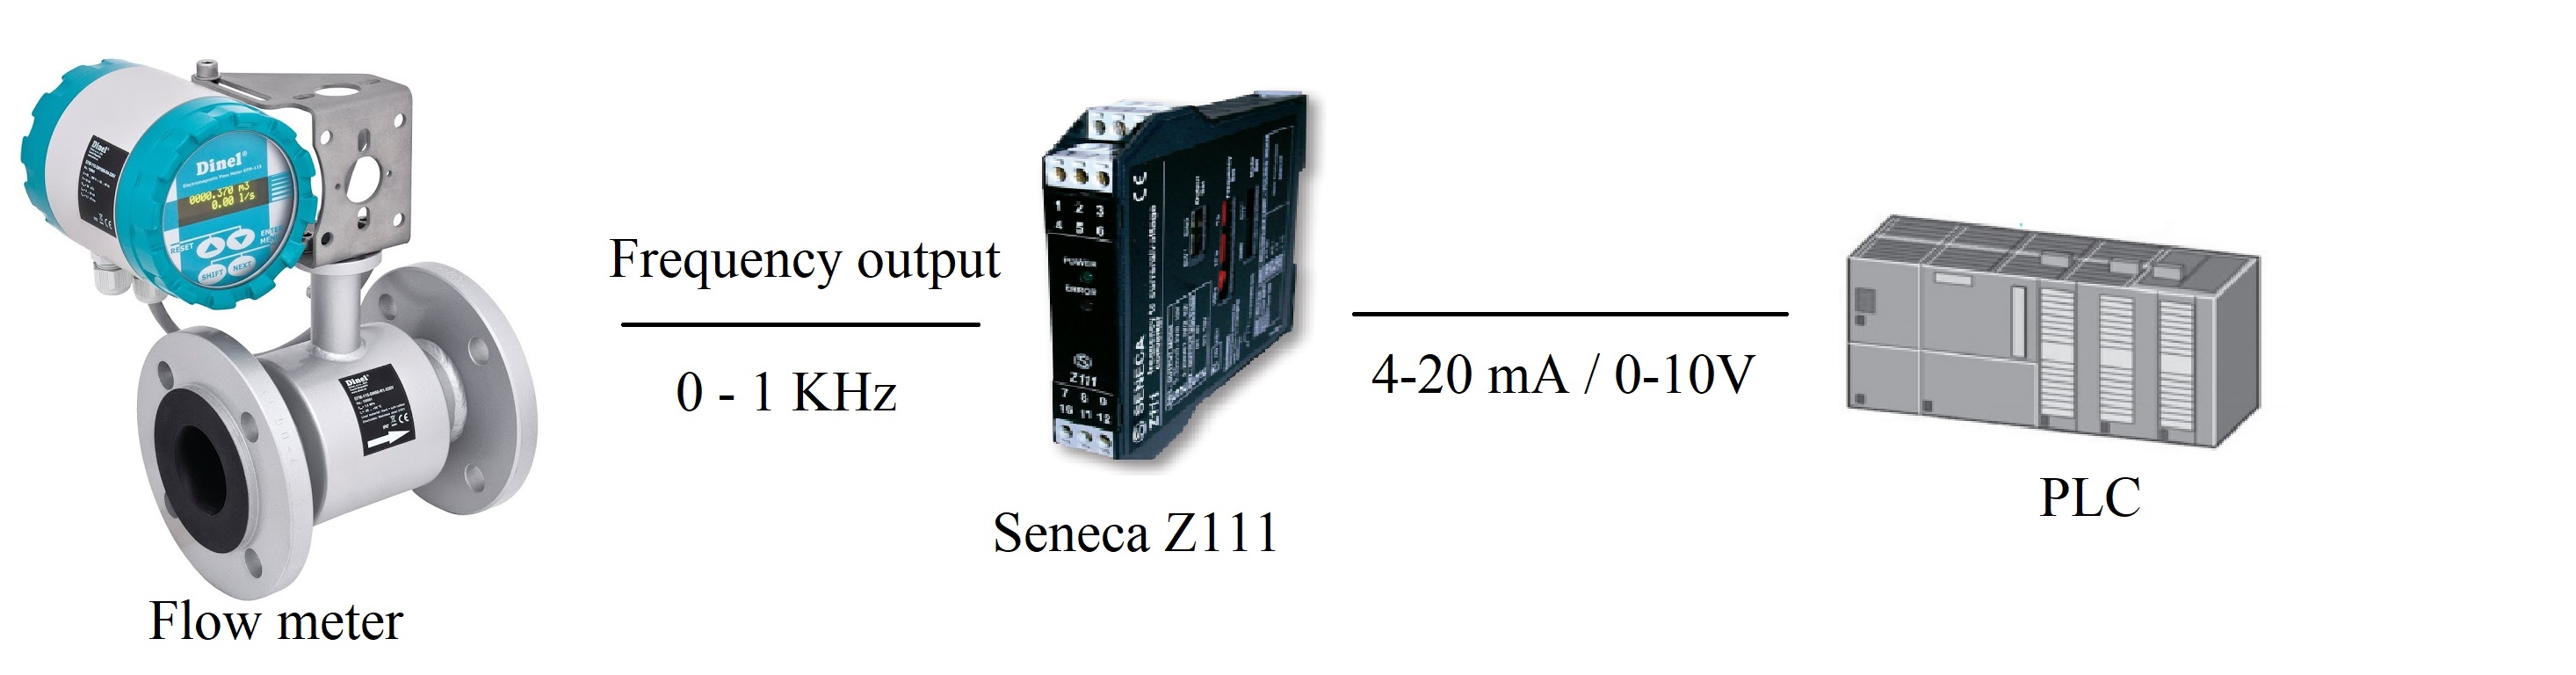 Bộ chuyển đổi tín hiệu xung Seneca S111